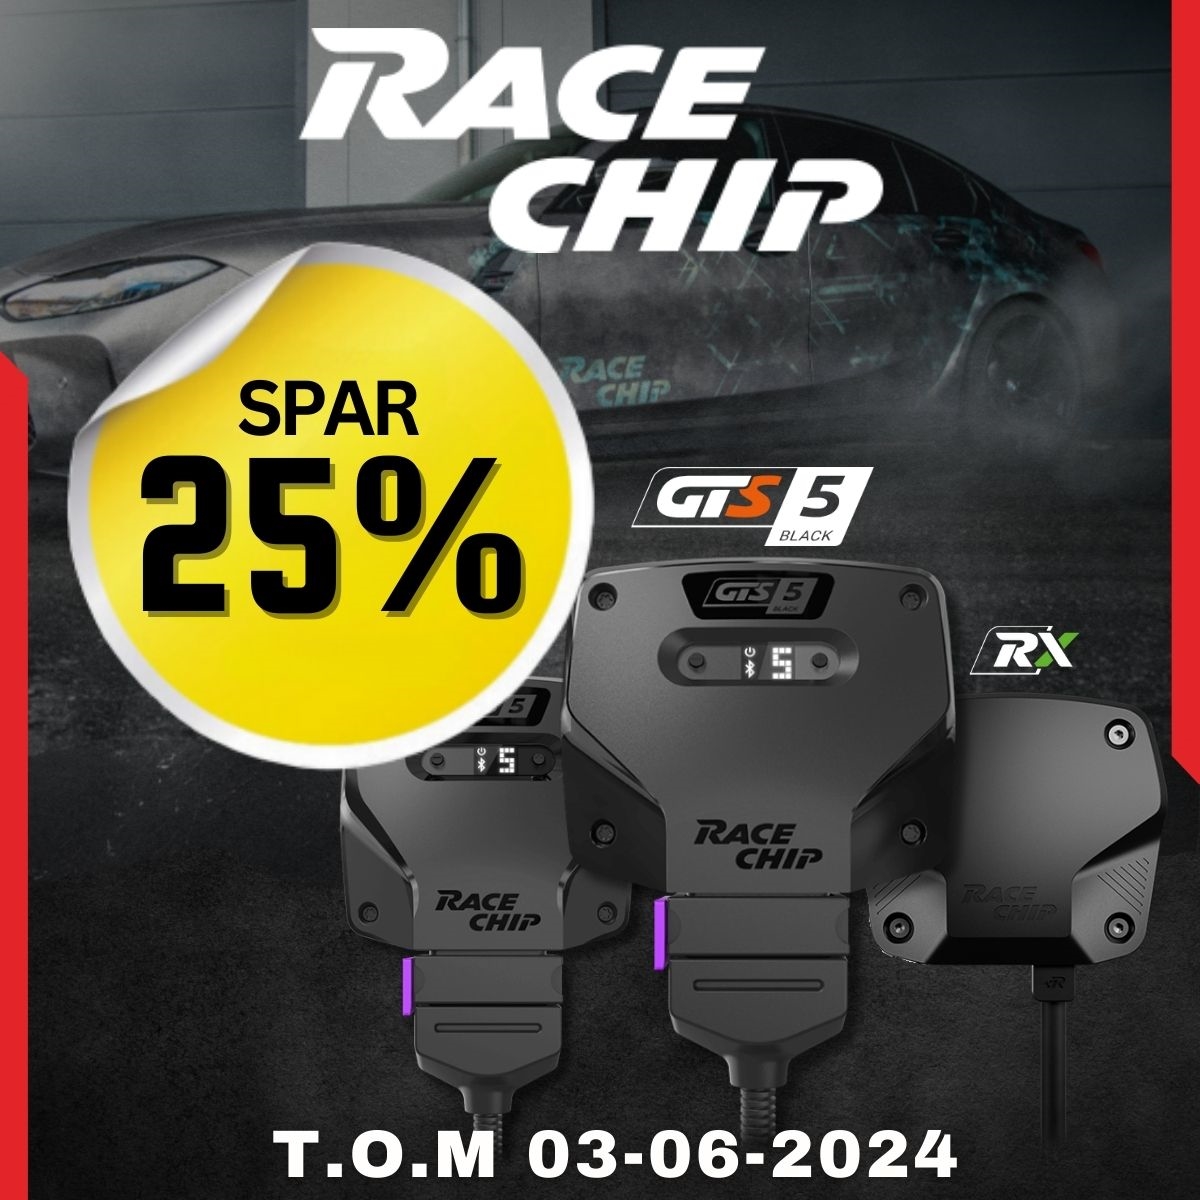 Spar 25% på RaceChip, opp til 30% flere hk og nm, samt opp til 15% bedre drivstofføkonomi.